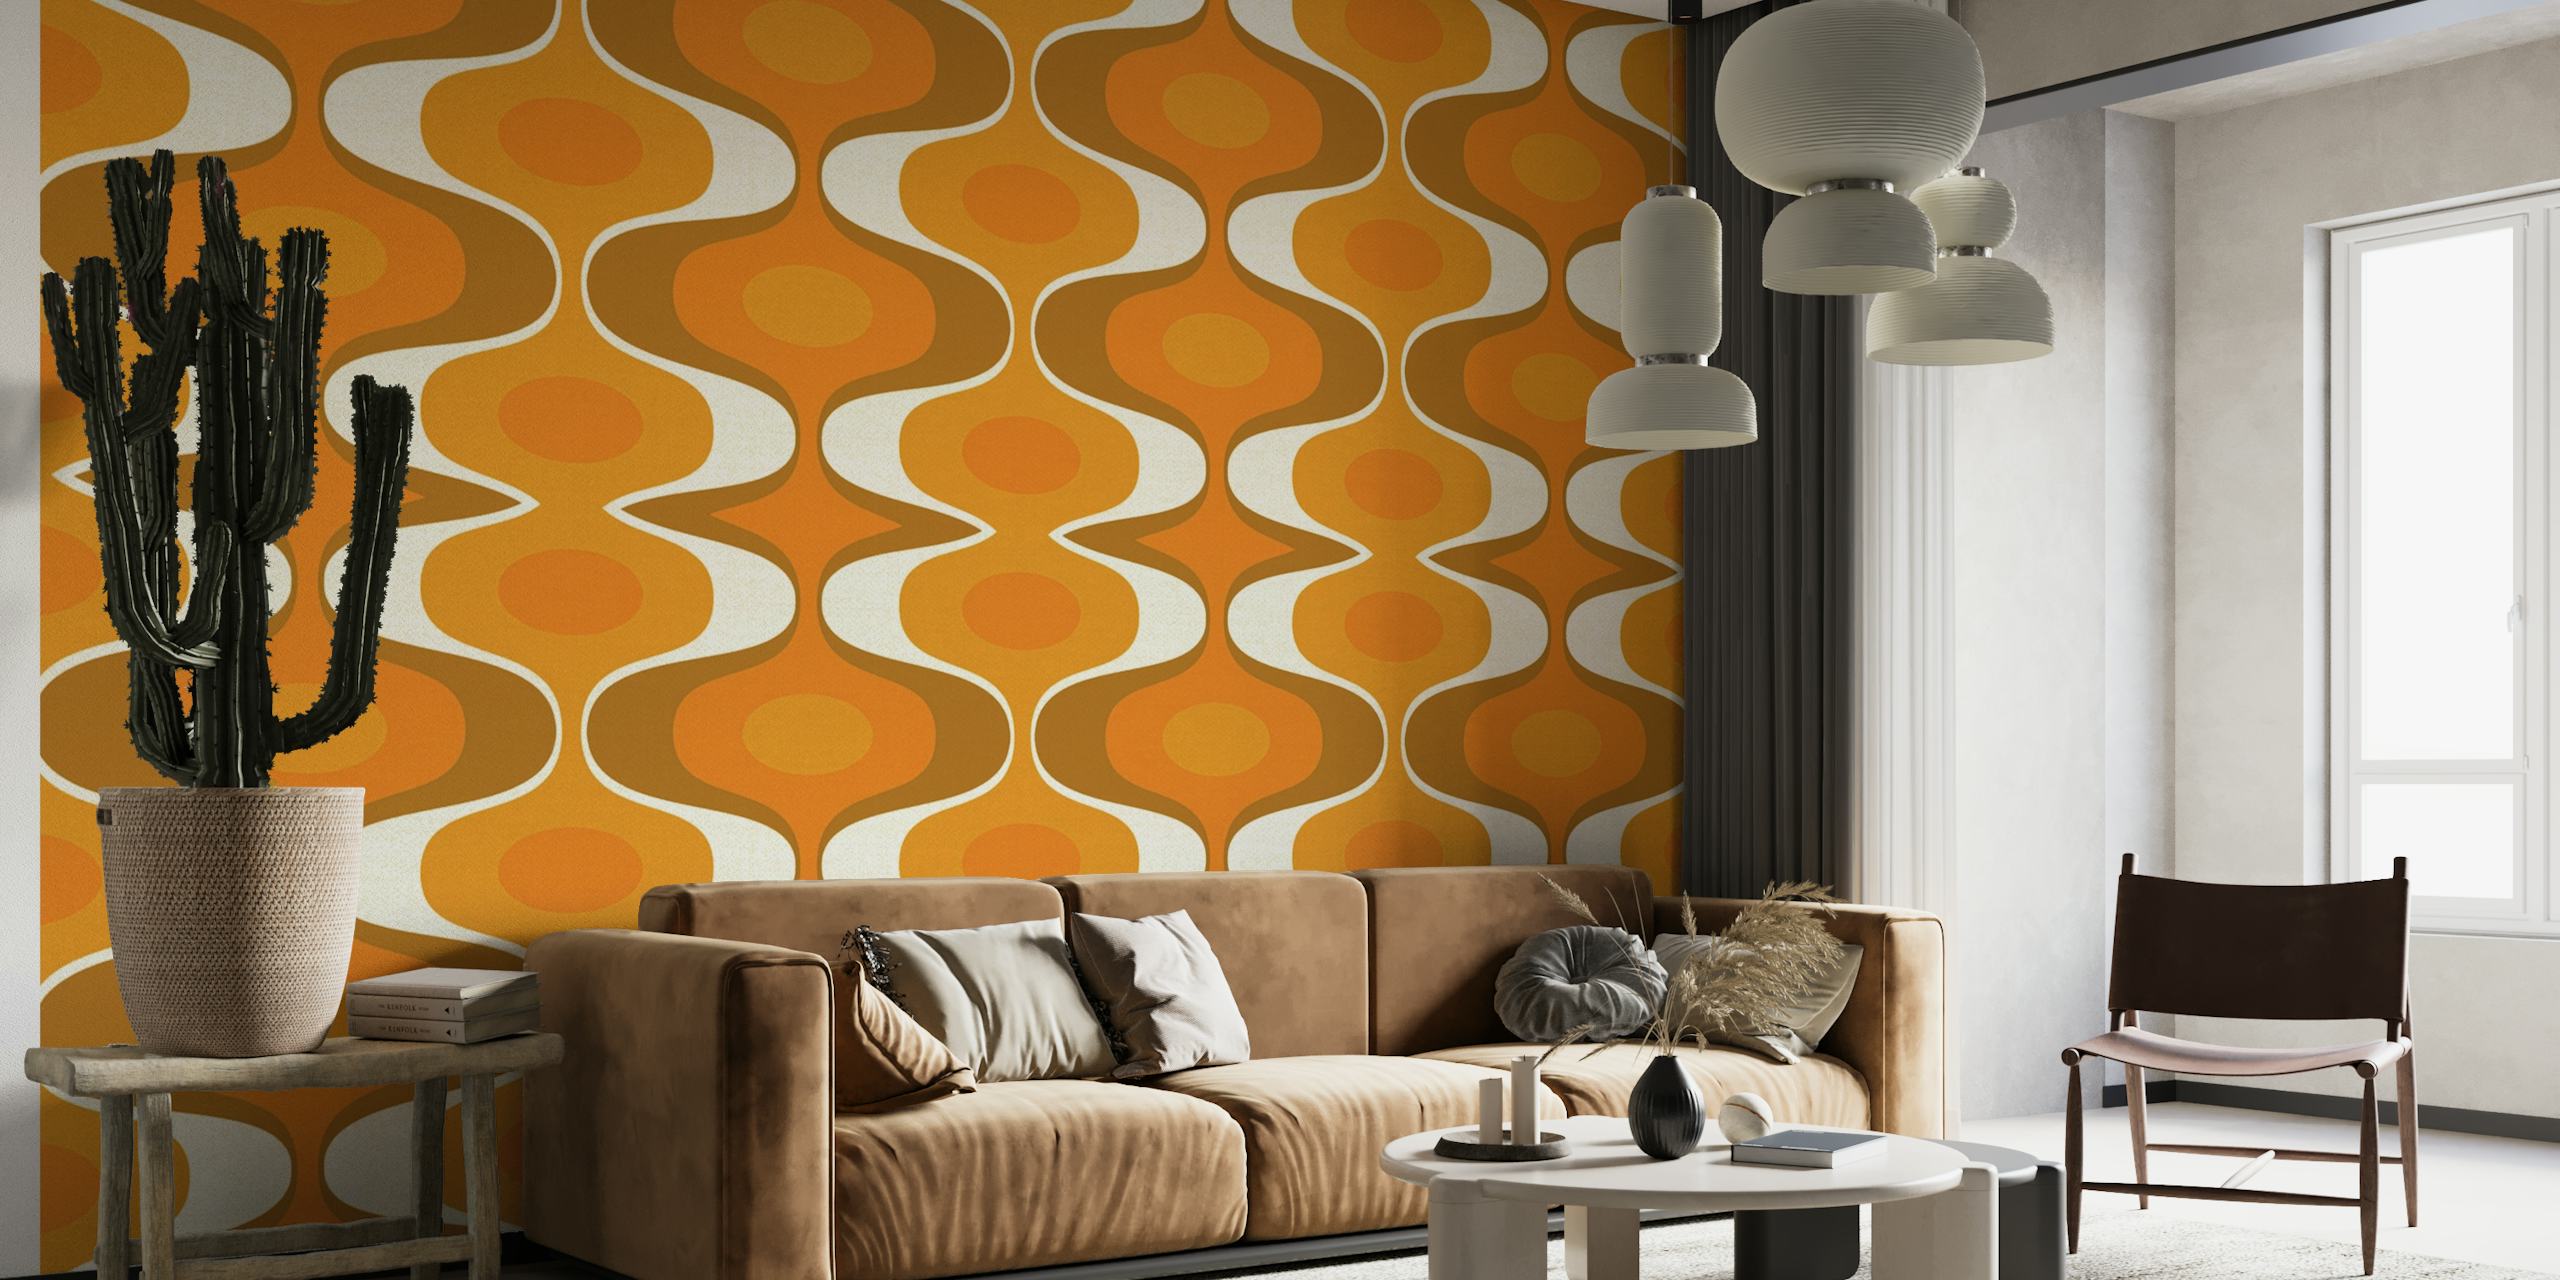 Mural de parede com padrão geométrico com tons laranja e terrosos refletindo o estilo retrô dos anos 70